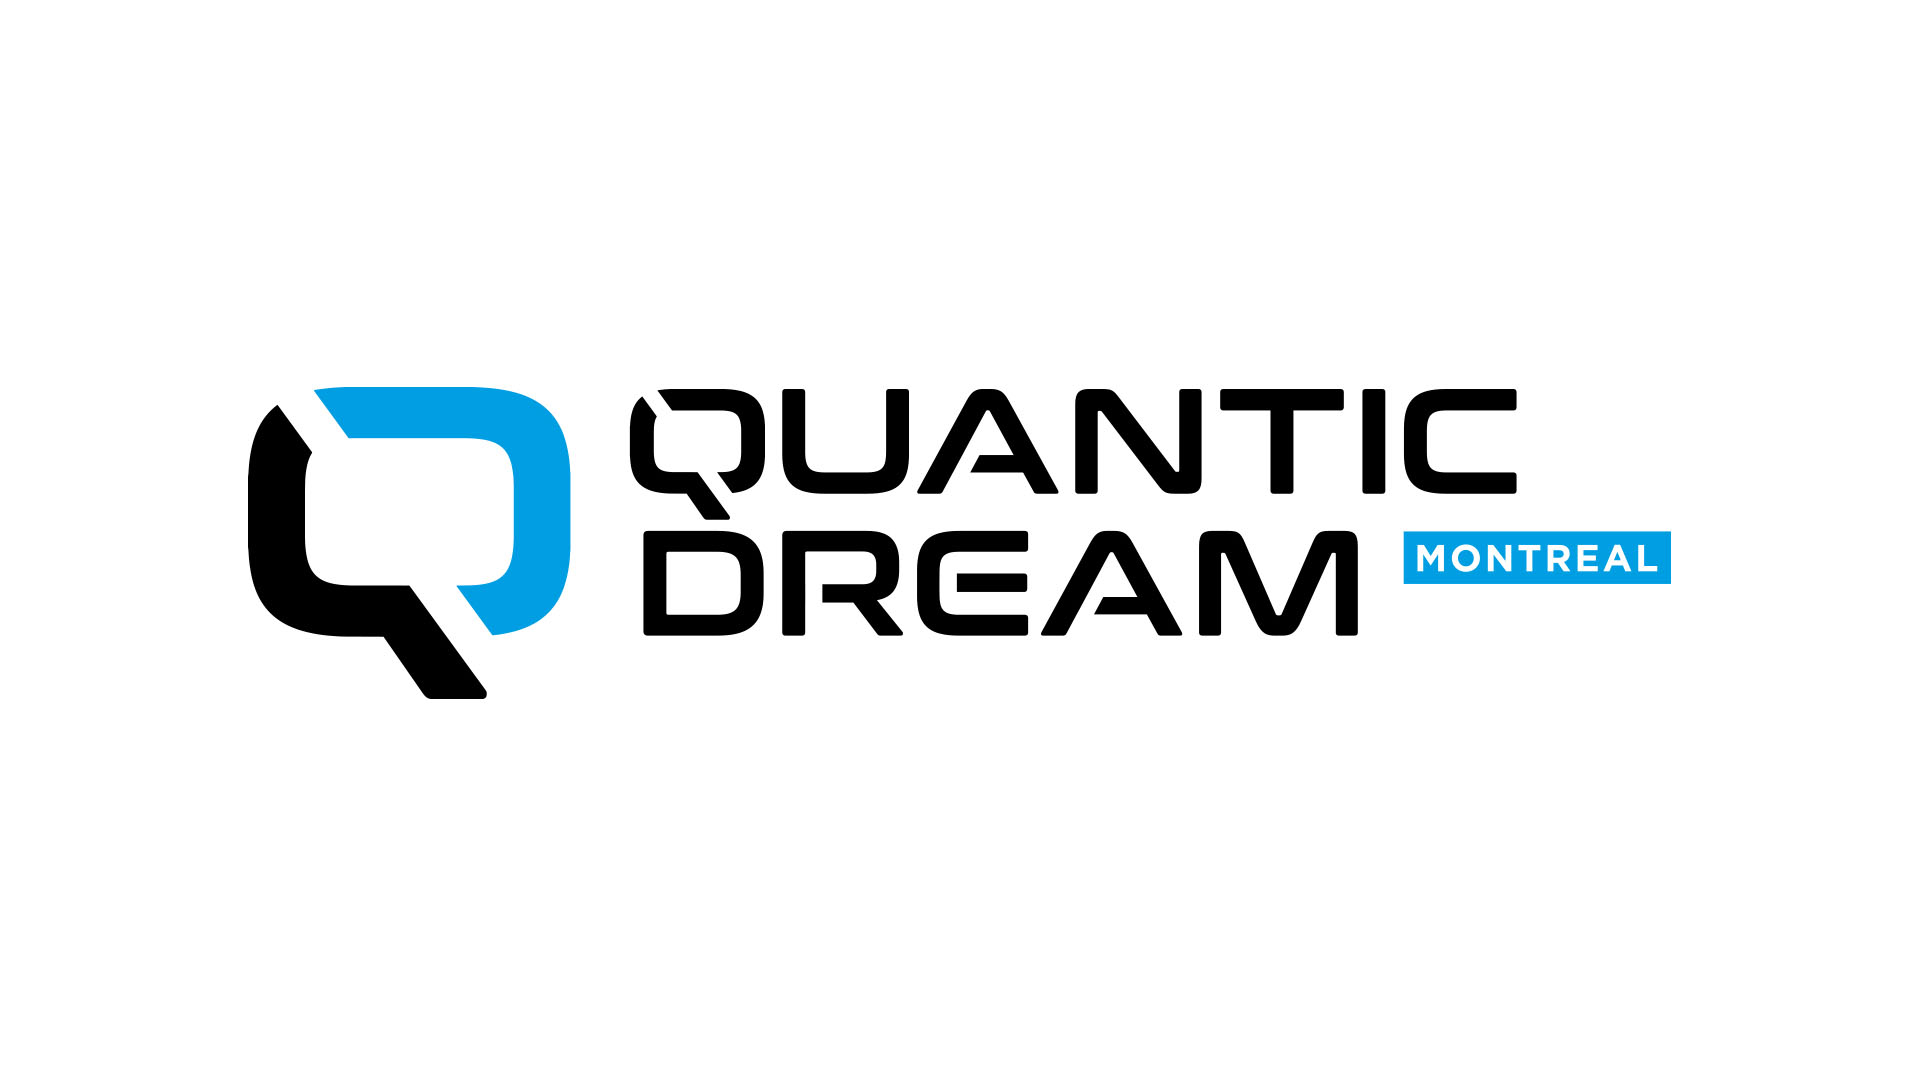 Quantic Dream Montreal 02 04 21 1